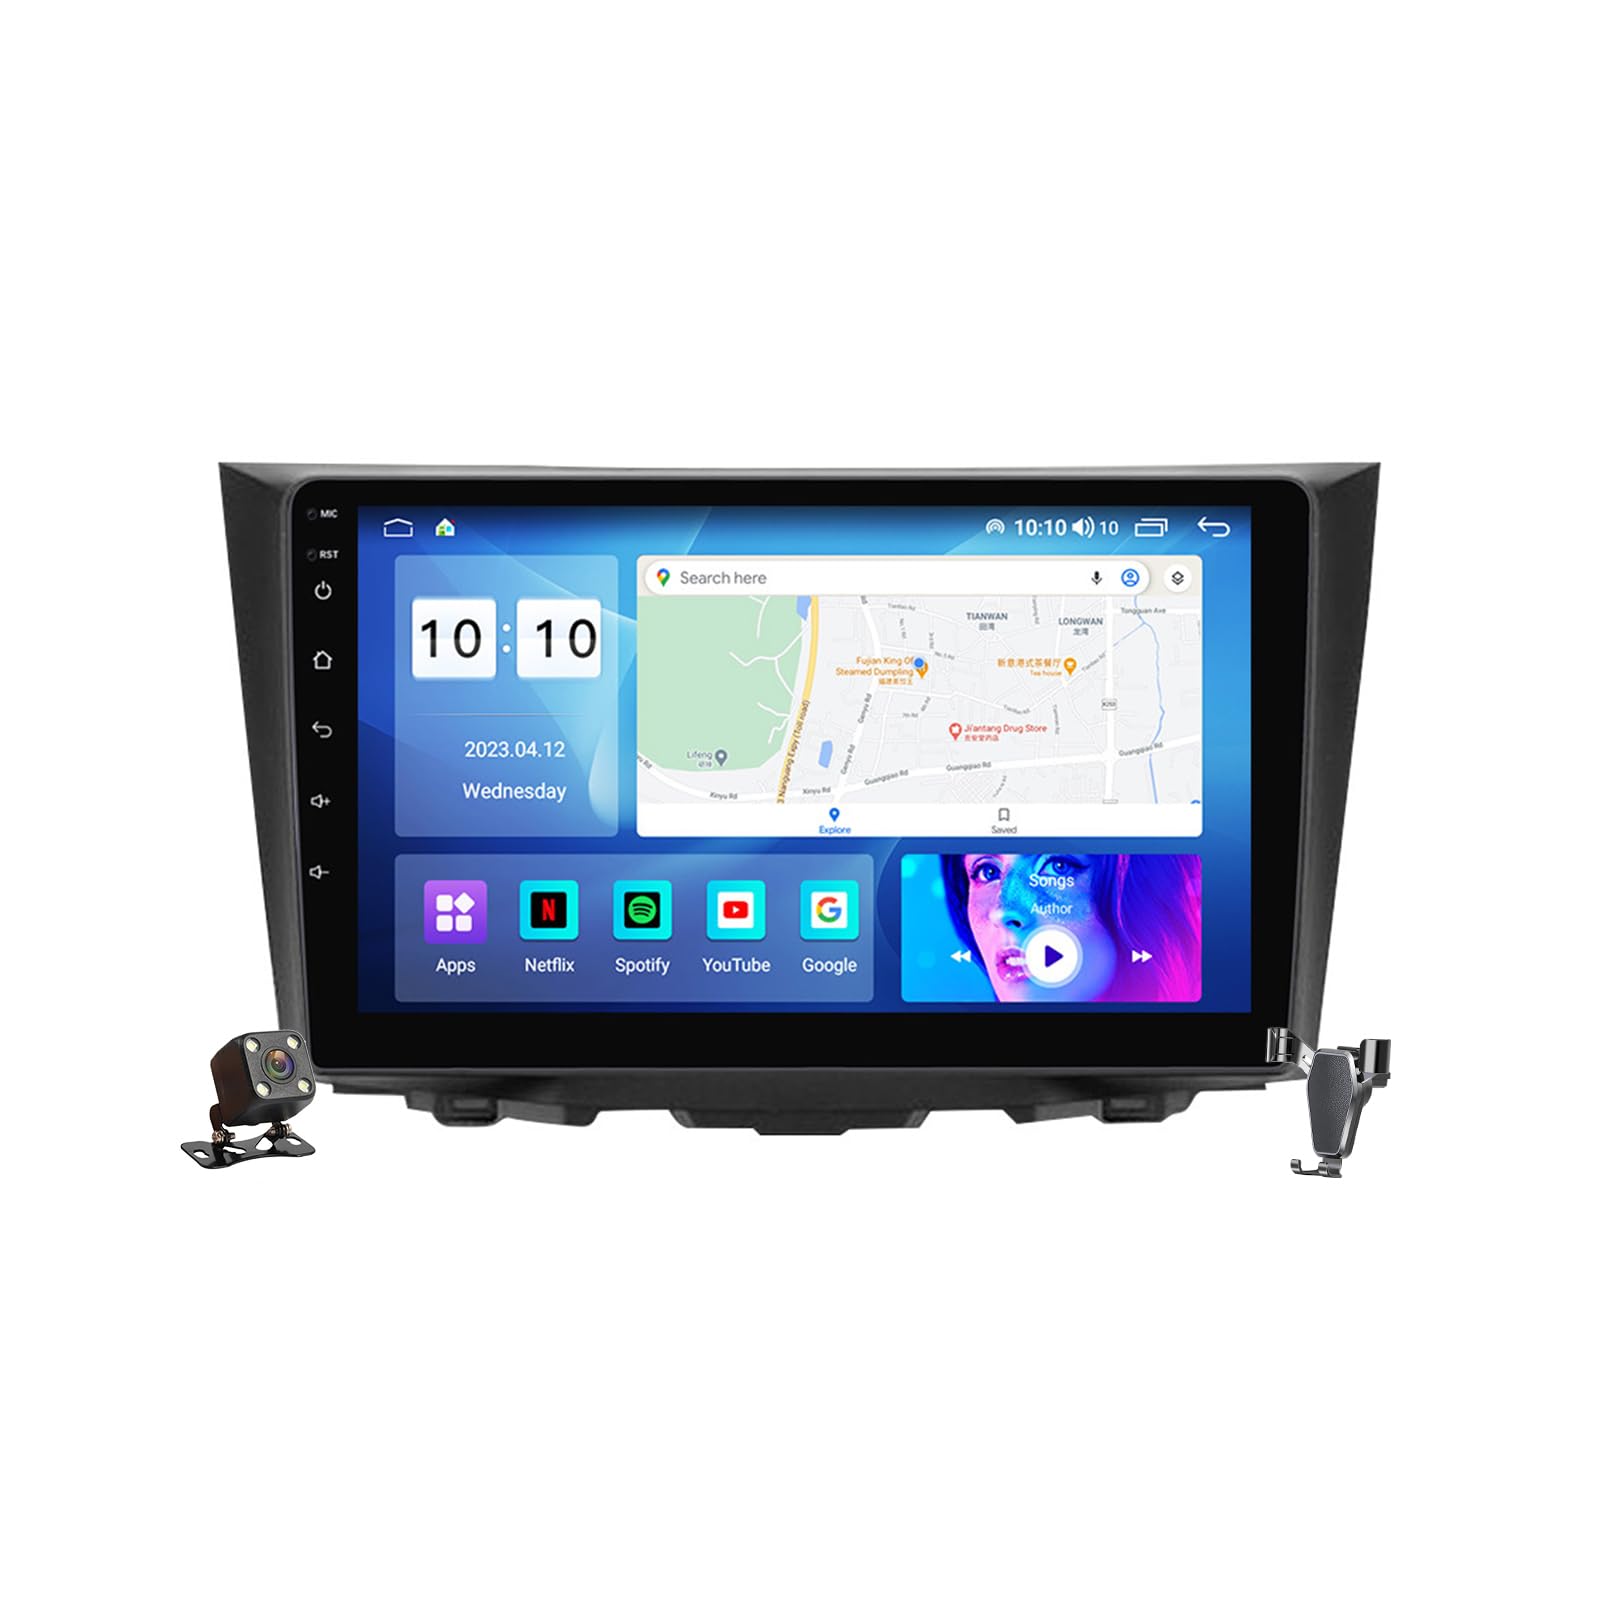 YLOXFW Android 12.0 Autoradio Stereo Navi mit 4G WIFI DSP Carplay für Suzuki Kizashi 2009-2015 Sat GPS Navigation 9 zoll Touchscreen Multimedia Video Player FM BT Receiver,M700s von YLOXFW